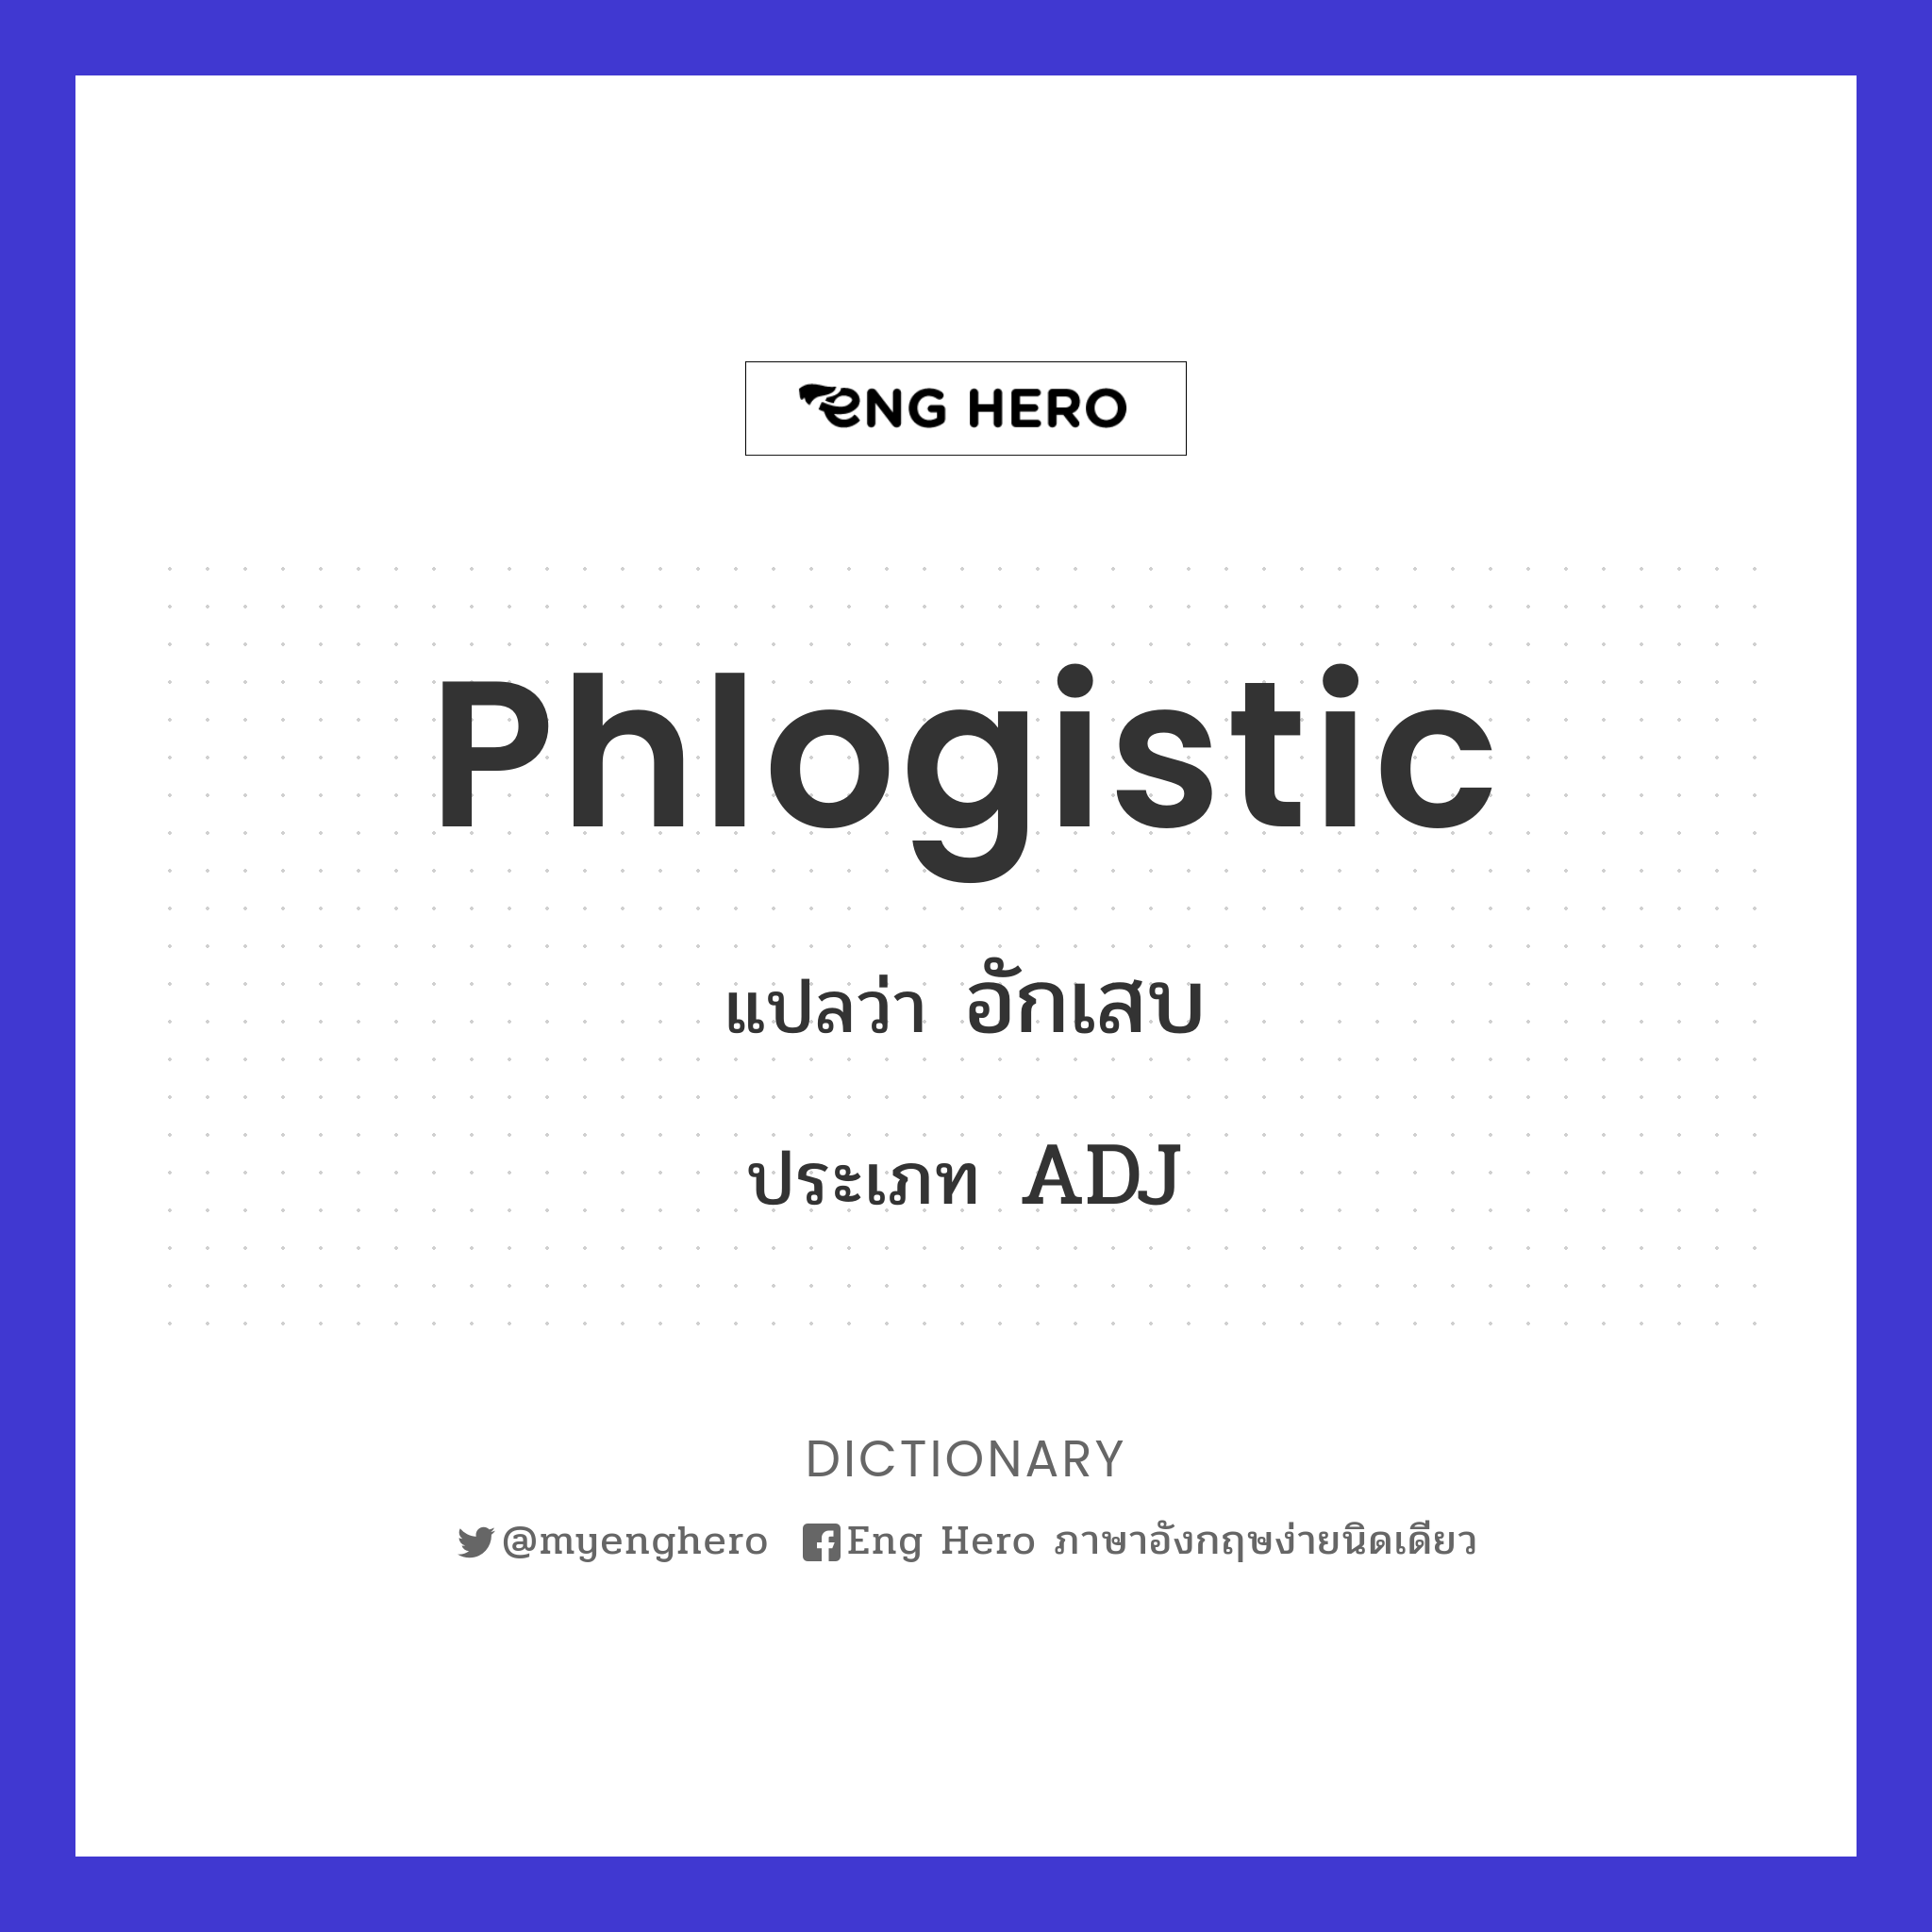 phlogistic